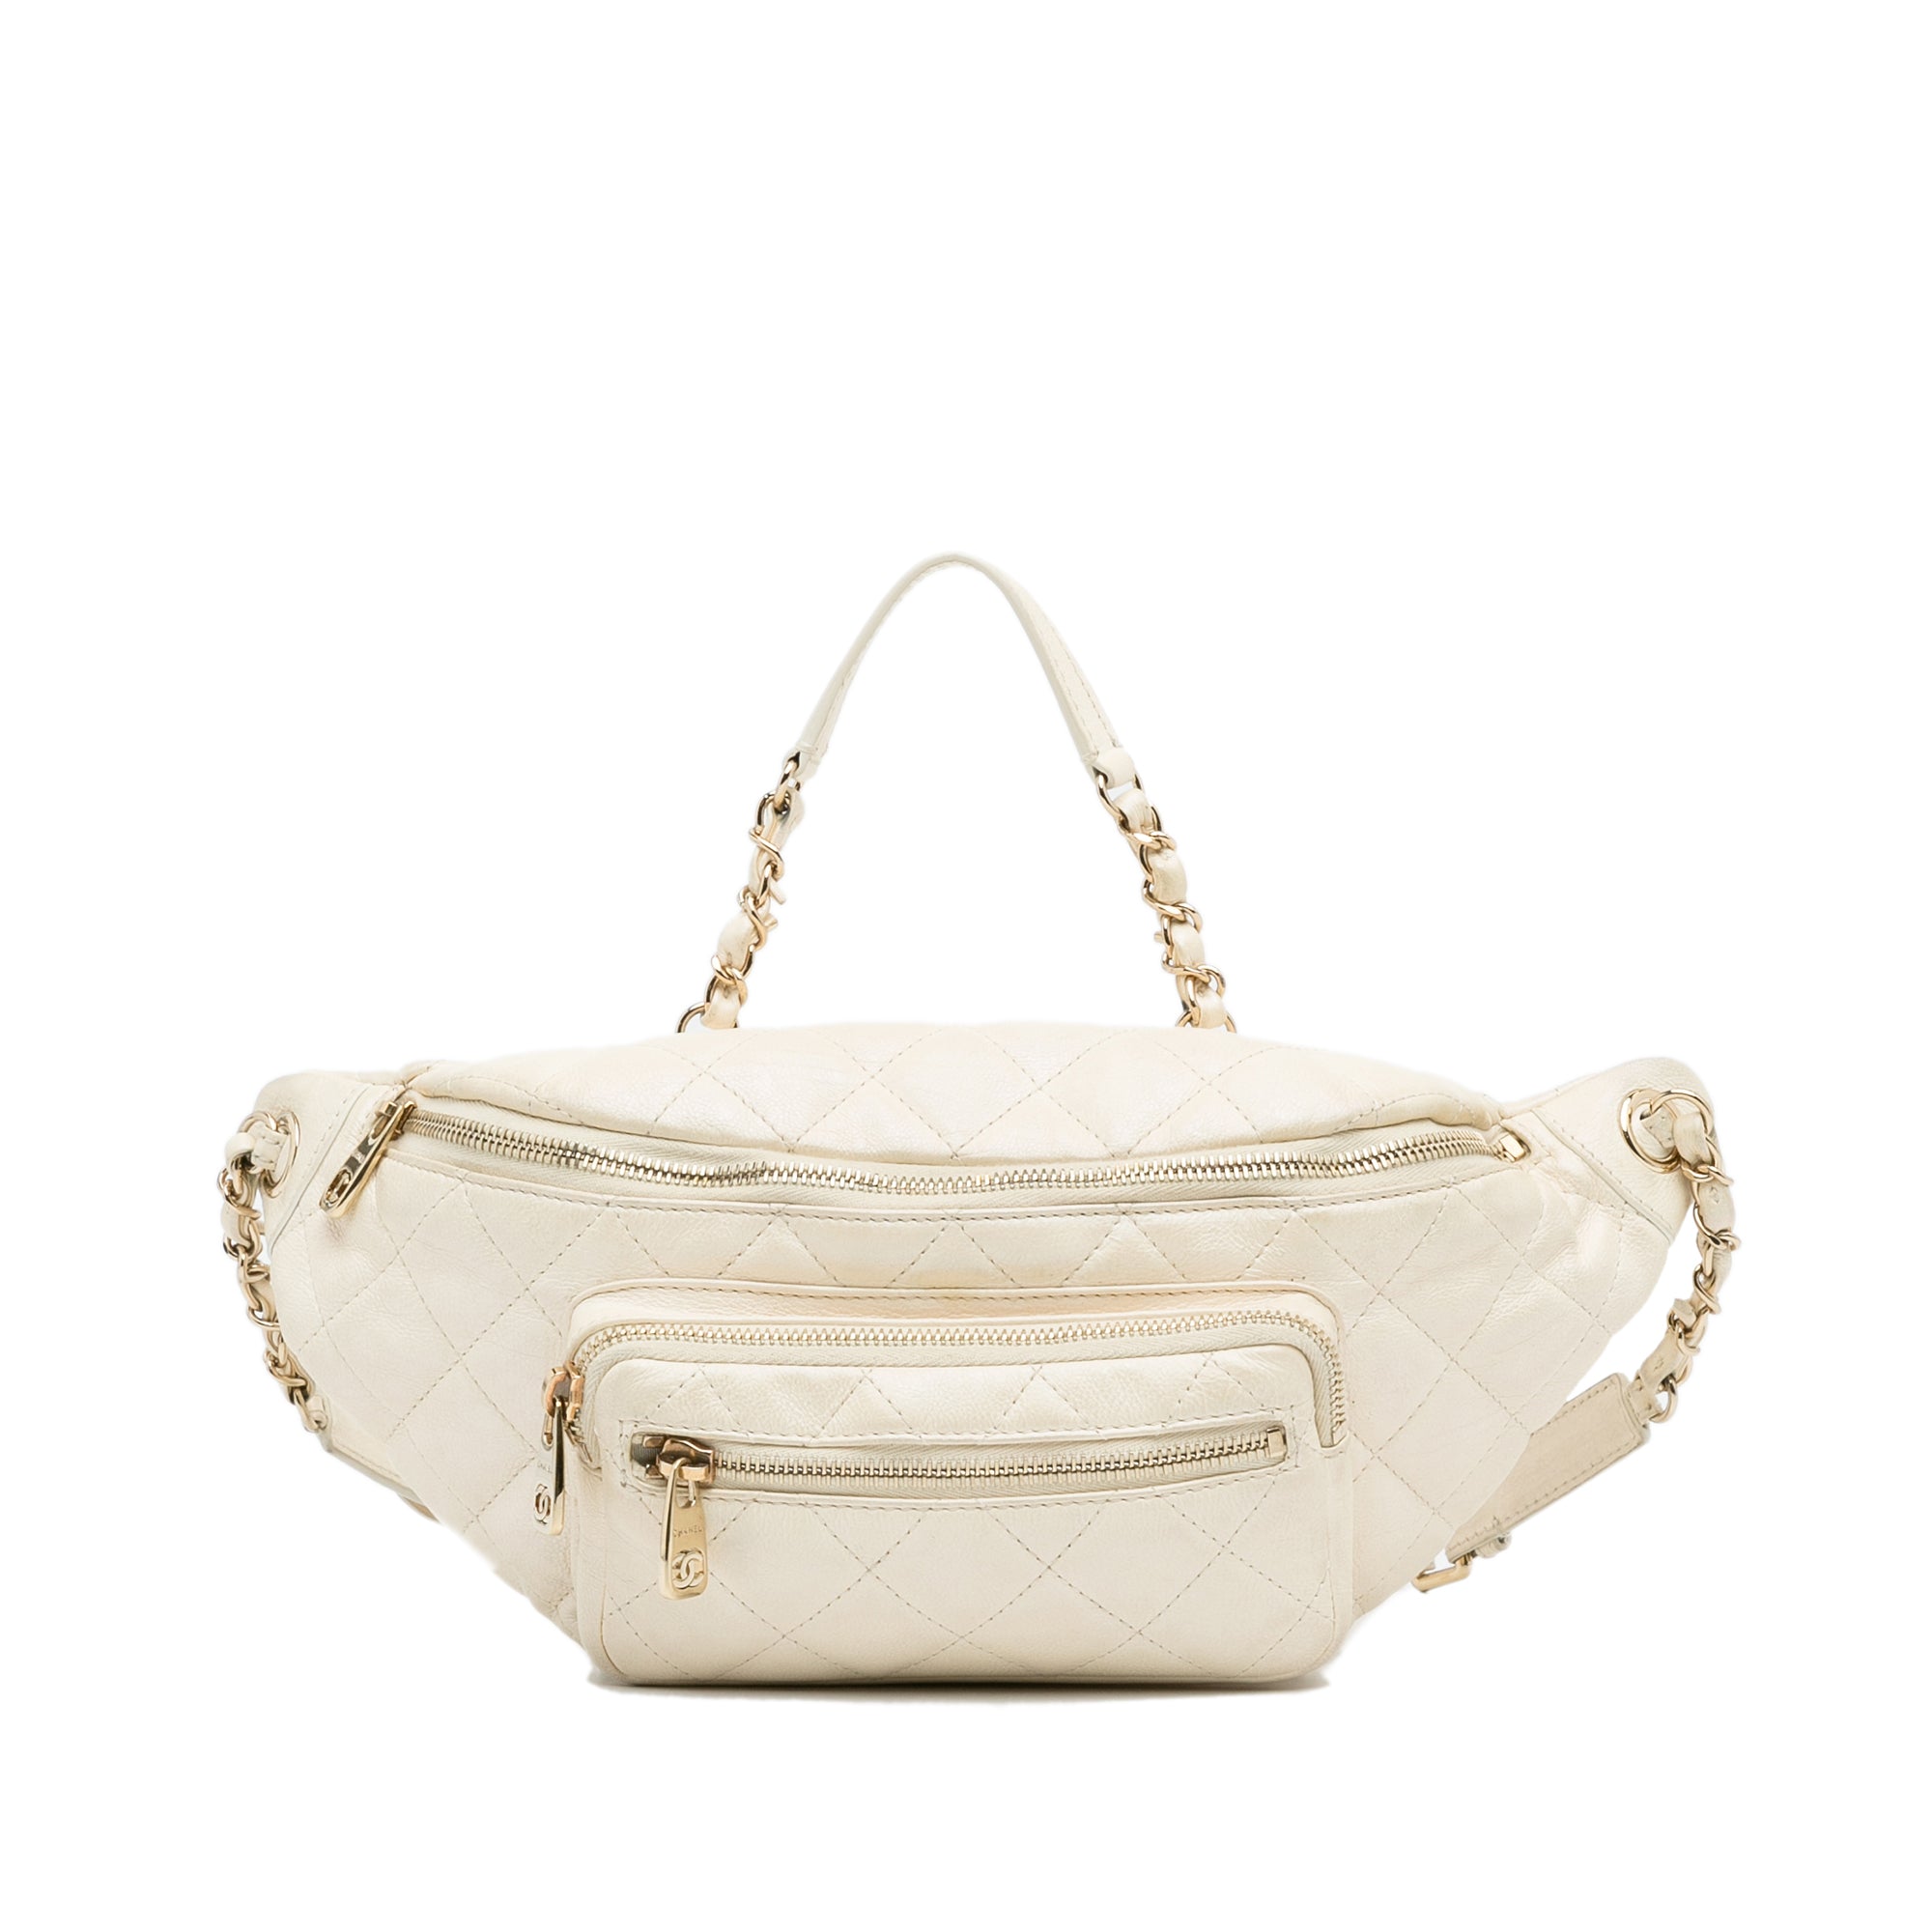 Chanel Belt Bag  Chanel belt bag, Belt bag, Bags